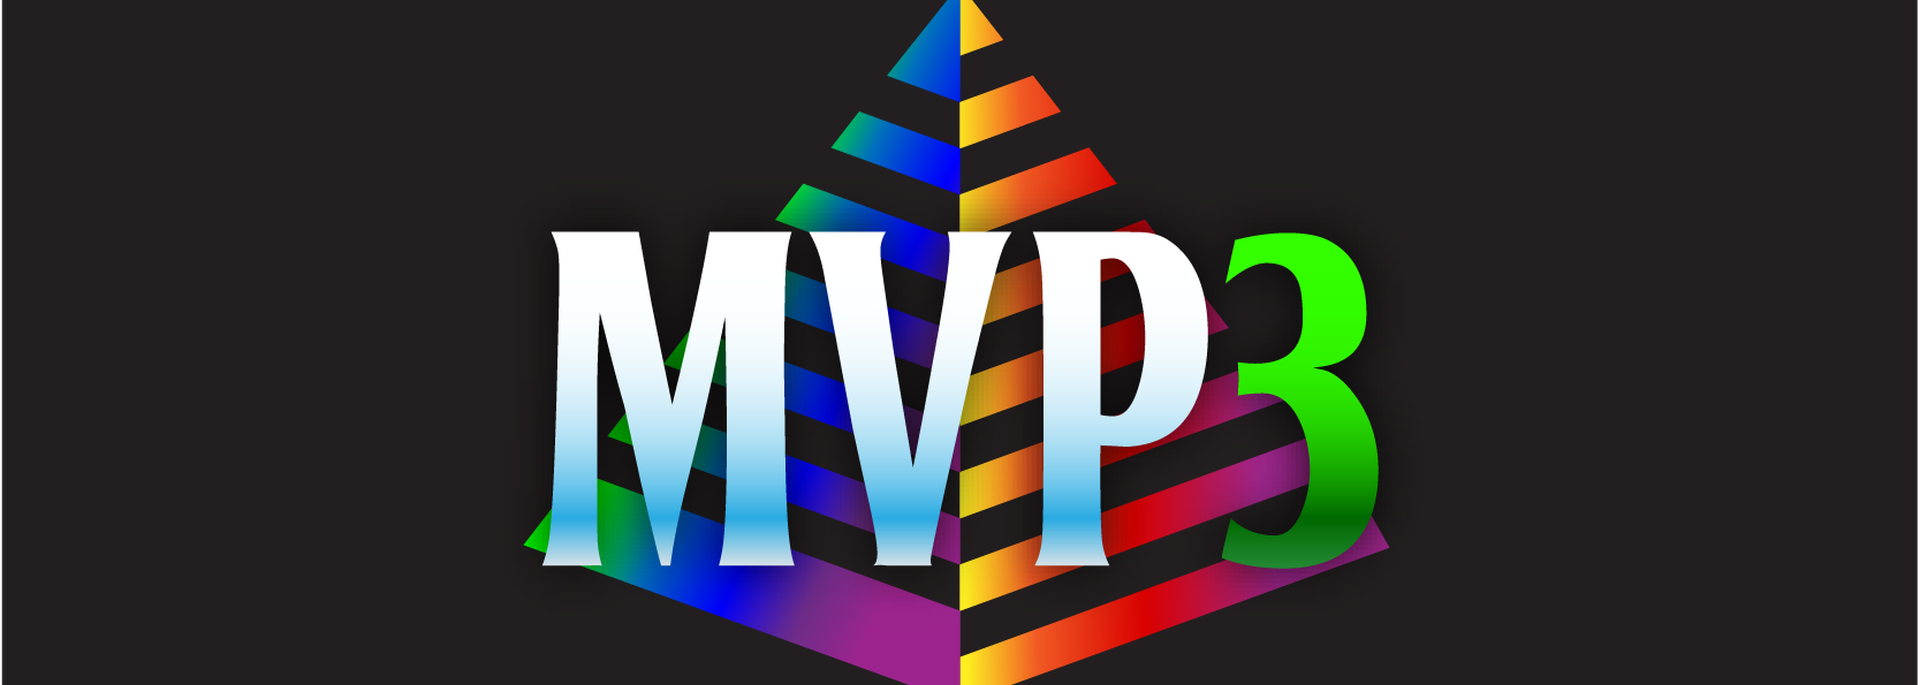 MVP3 Original Series